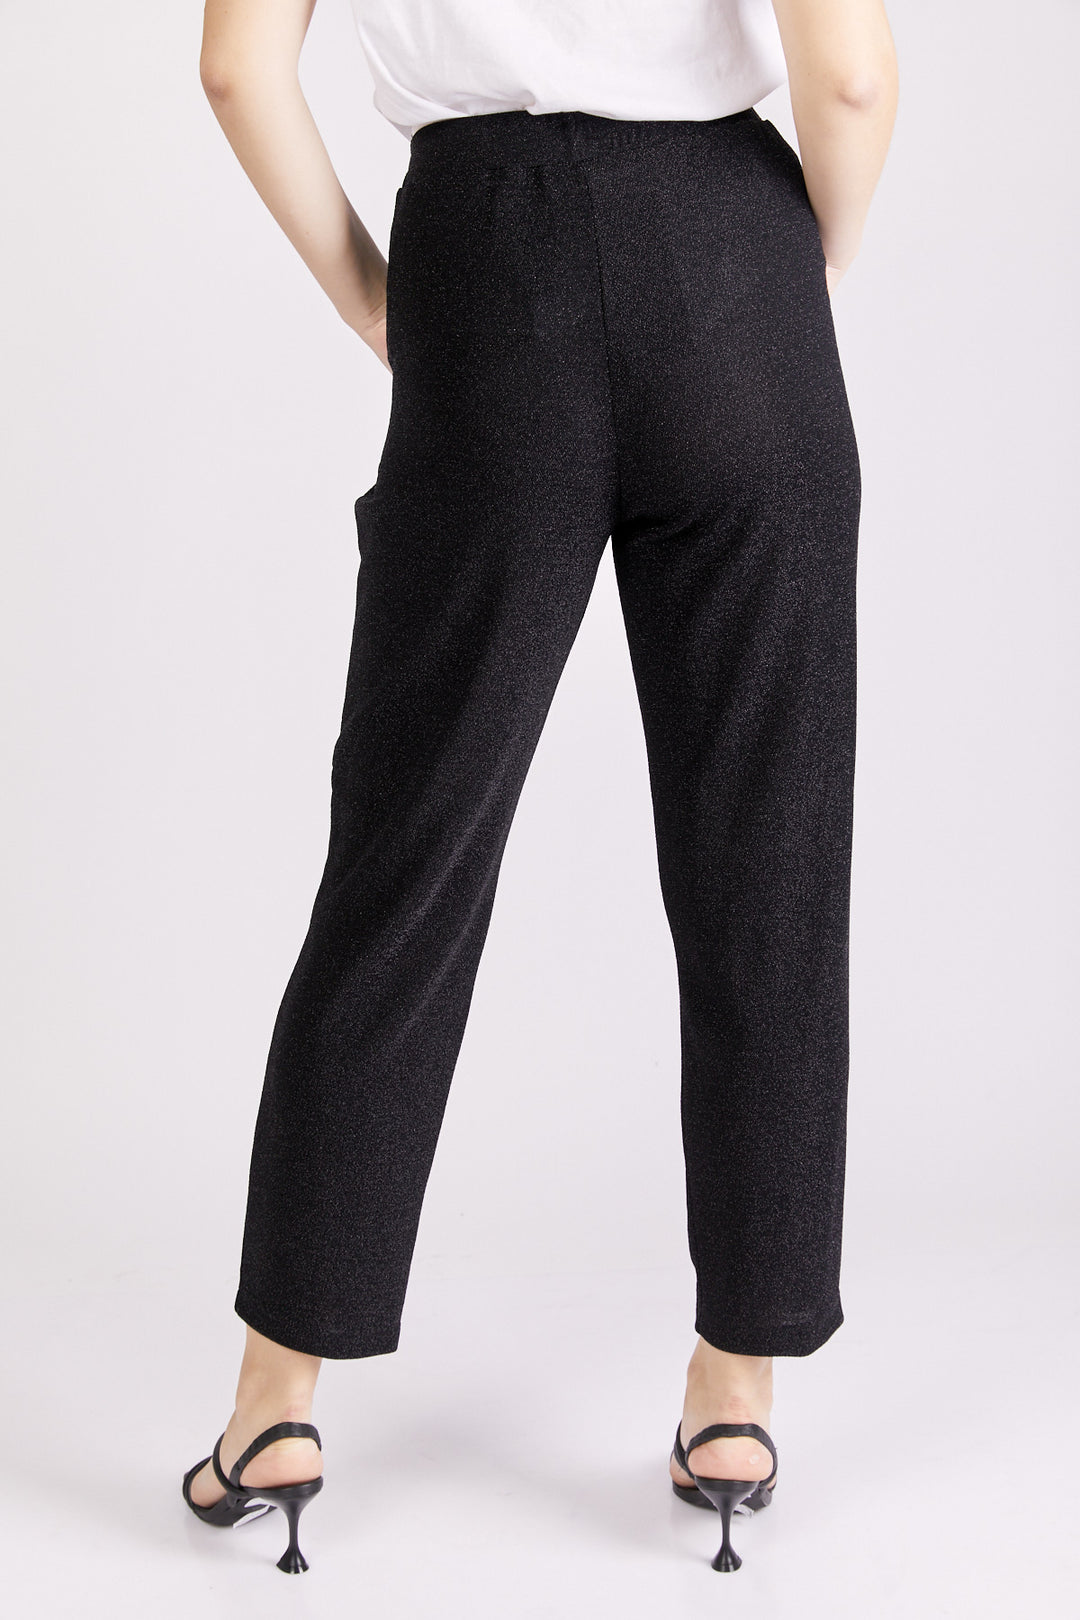 מכנסי רויאל בצבע שחור לורקס - Neta Efrati